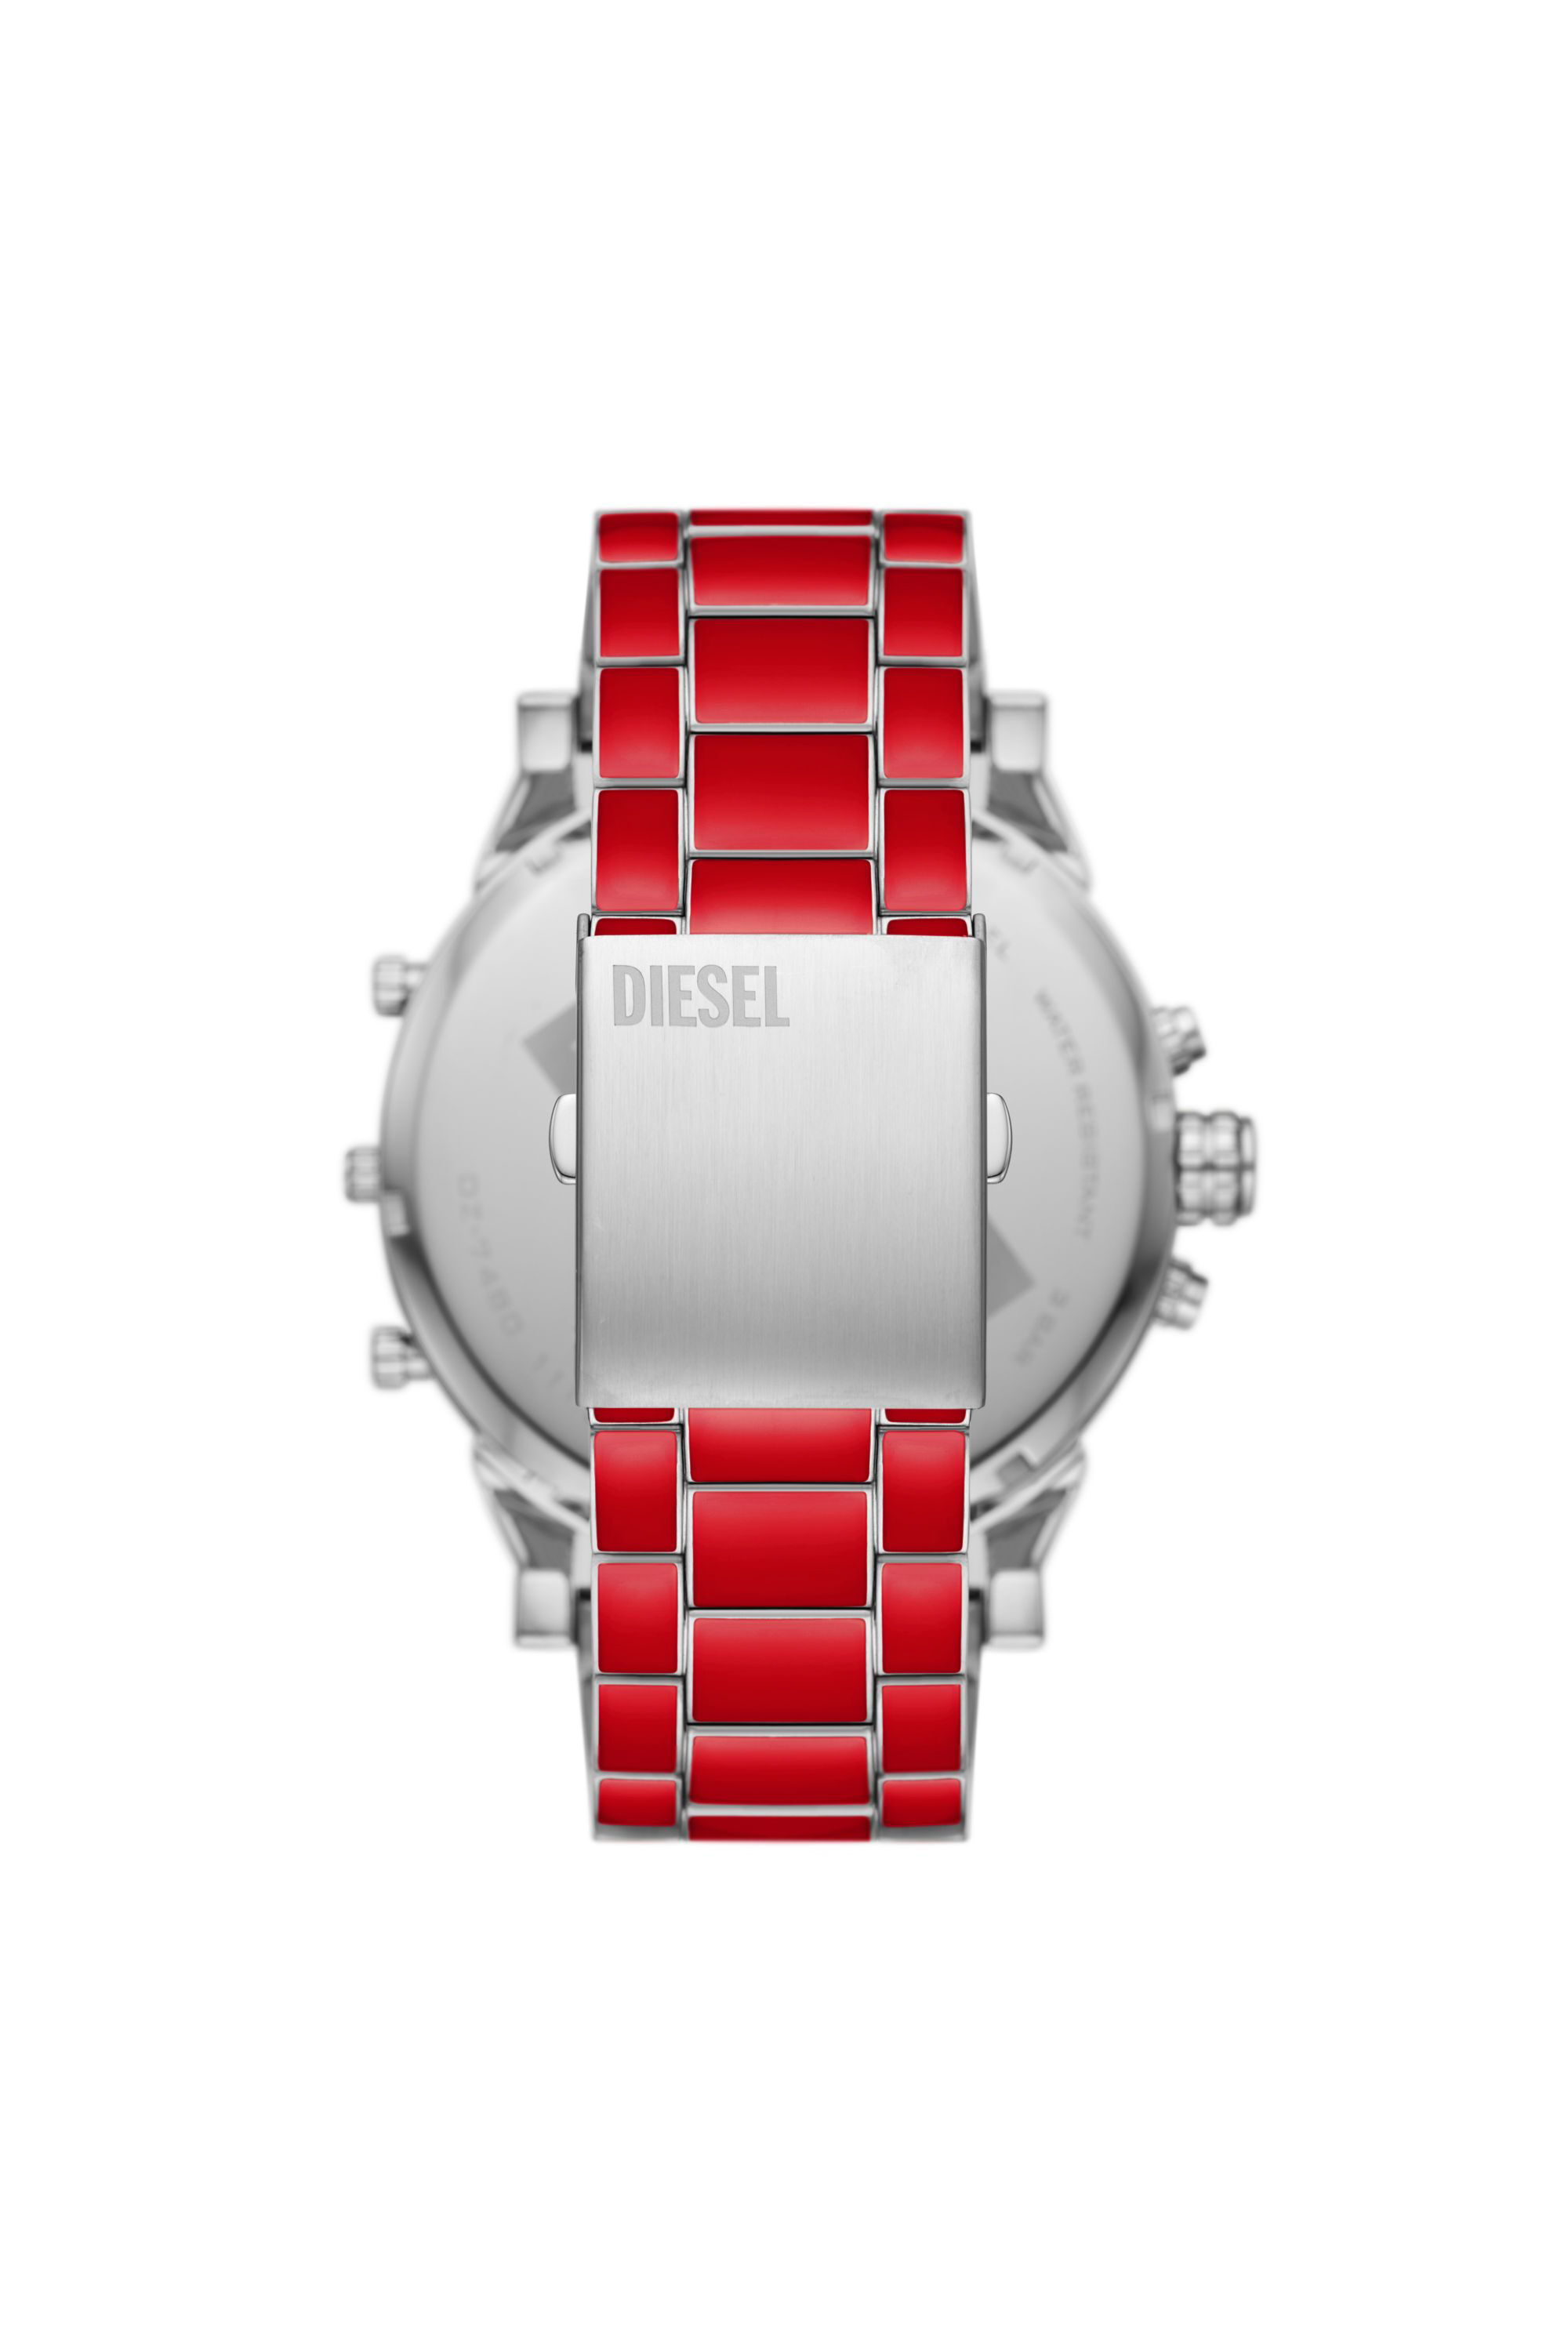 Diesel - DZ7480, Hombre Reloj Mr. Daddy 2.0 de acero inoxidable in Rojo - Image 2